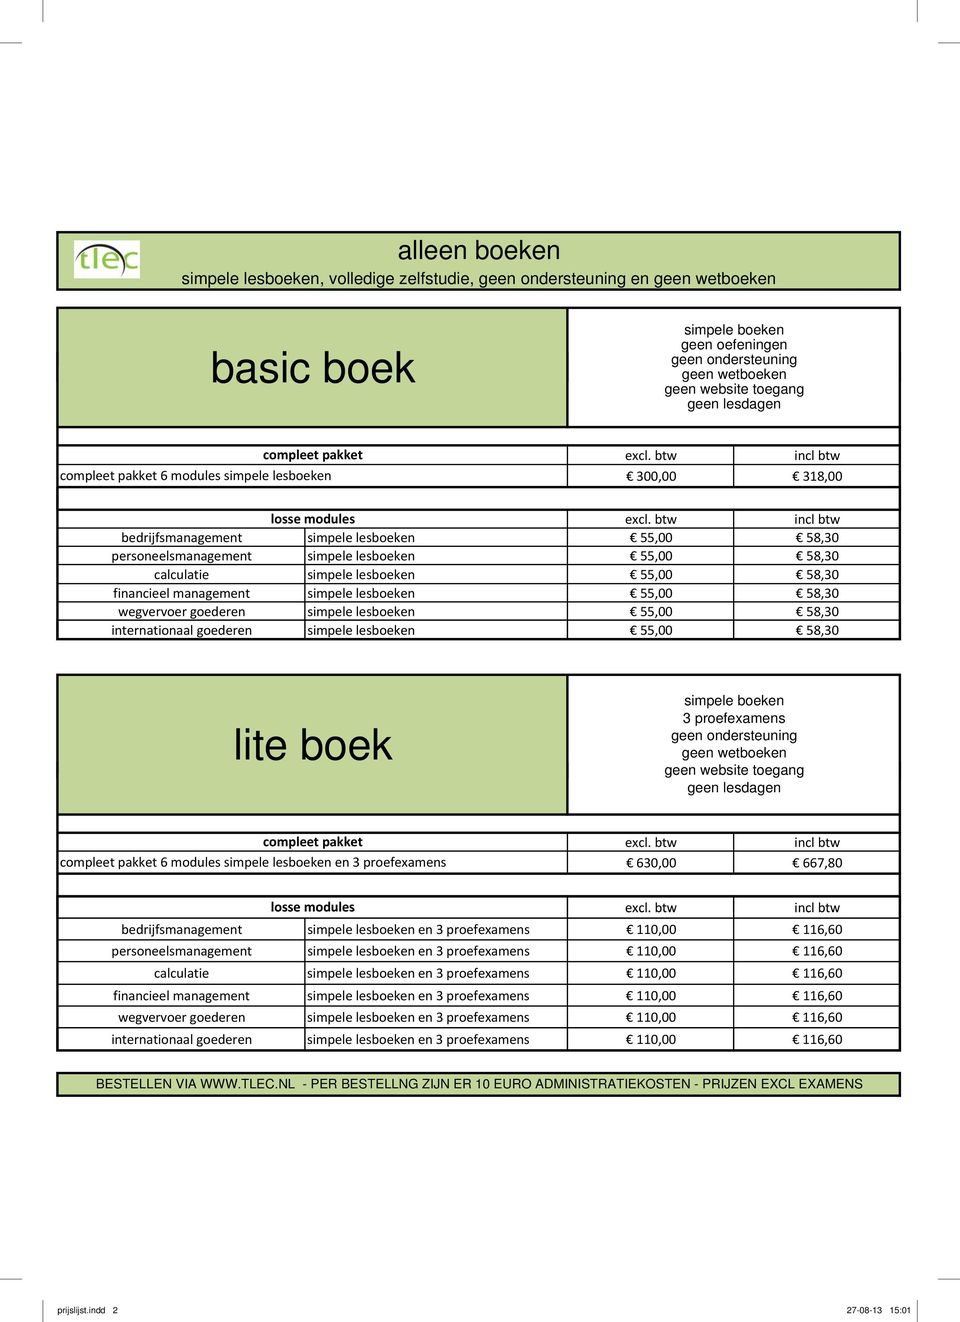 financieel management simpele lesboeken 55,00 58,30 wegvervoer goederen simpele lesboeken 55,00 58,30 internationaal goederen simpele lesboeken 55,00 58,30 lite boek simpele boeken 3 proefexamens